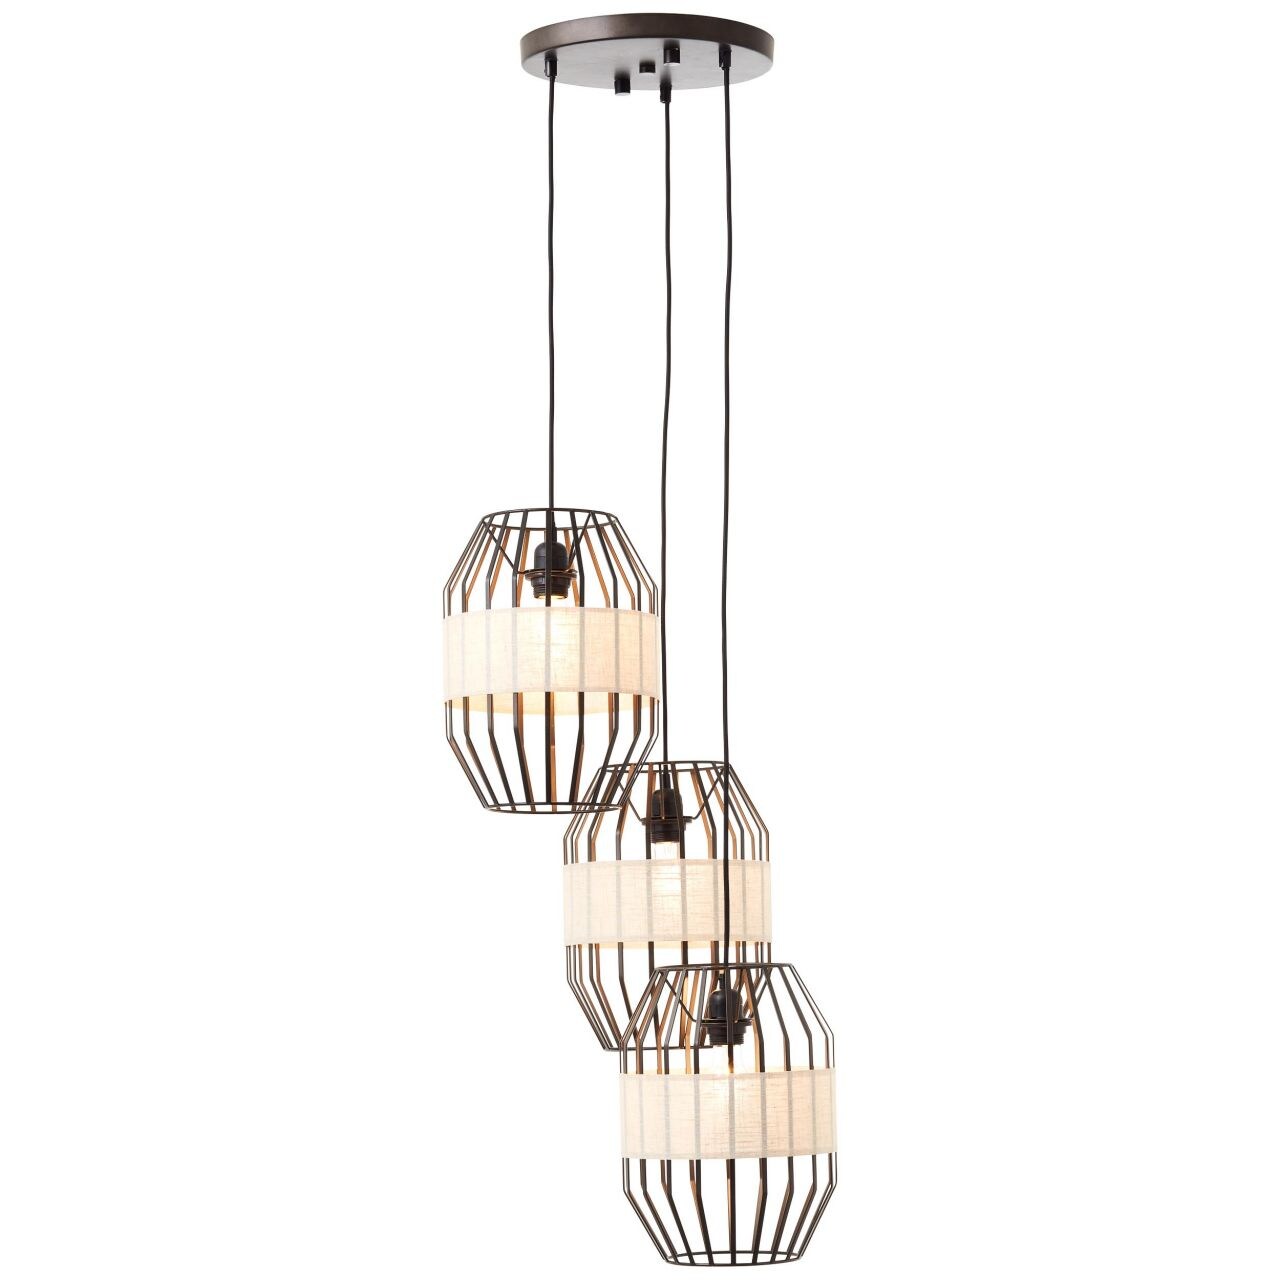 BRILLIANT Lampe, Slope Pendelleuchte 3flg schwarz/natur, 3x A60, E27, 40W, Kabel kürzbar / in der Höhe einstellbar